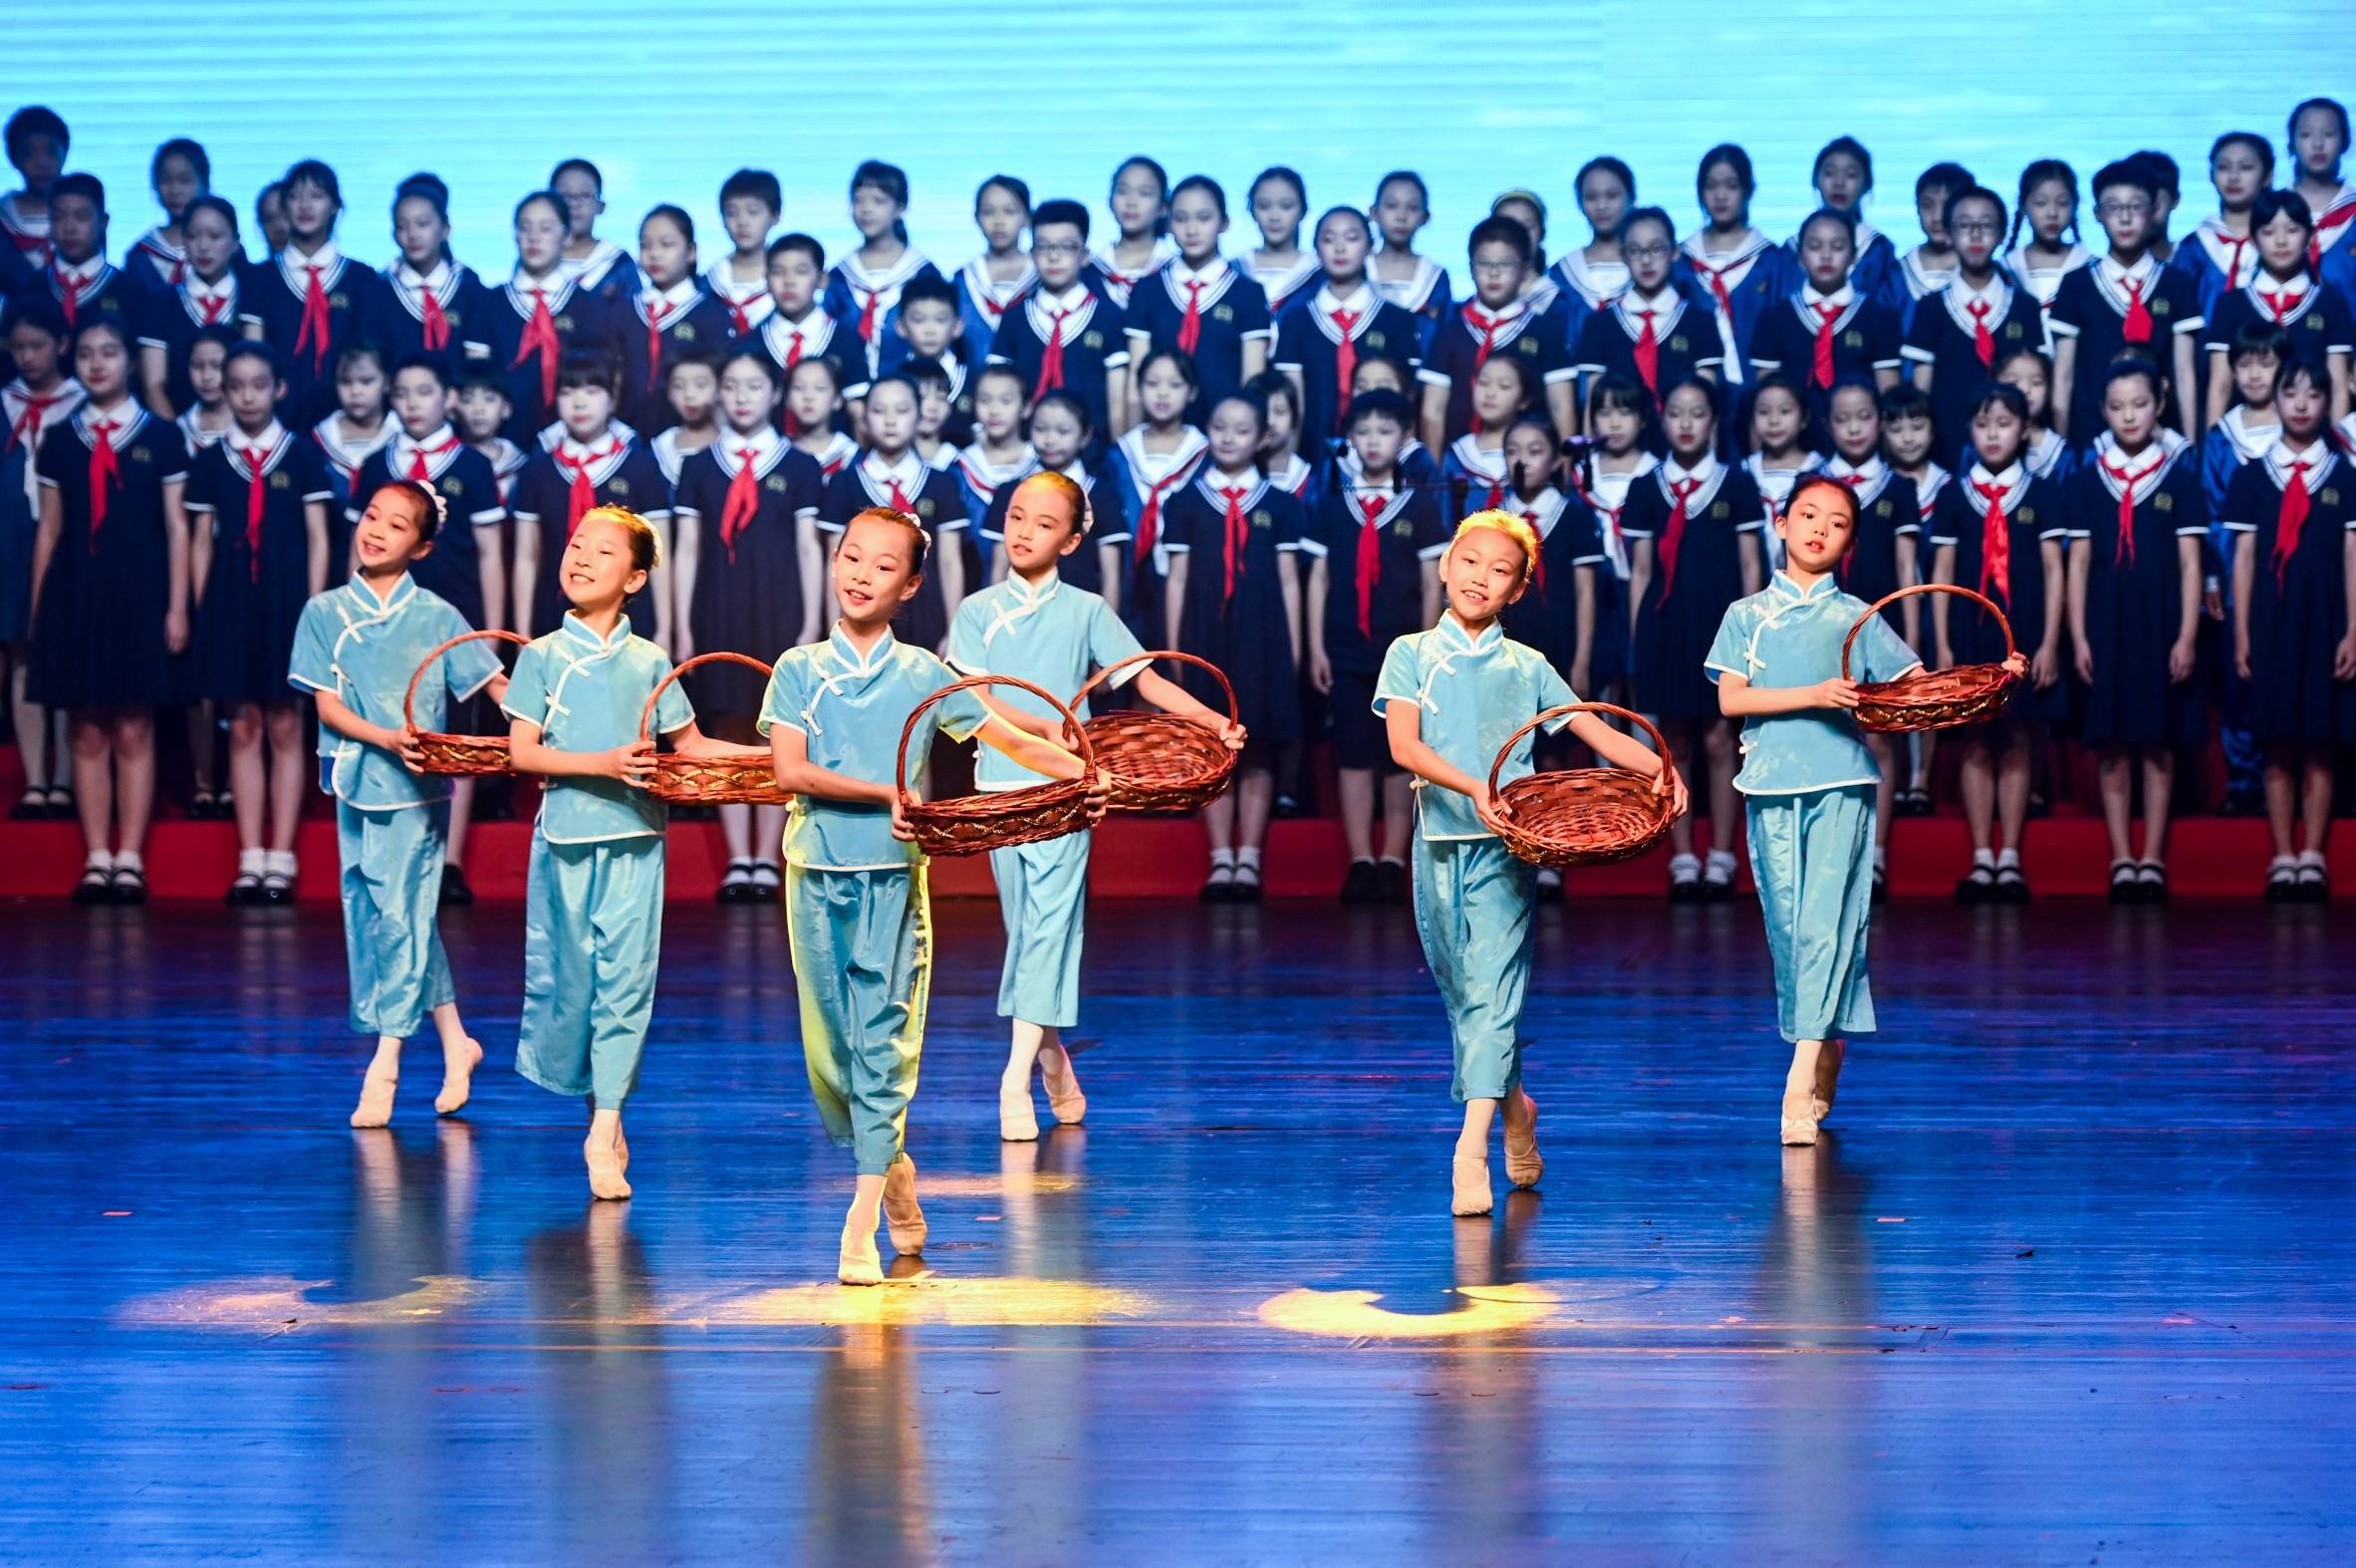 保利之夏童声合唱节以歌会友,50余支少儿合唱团聚上海